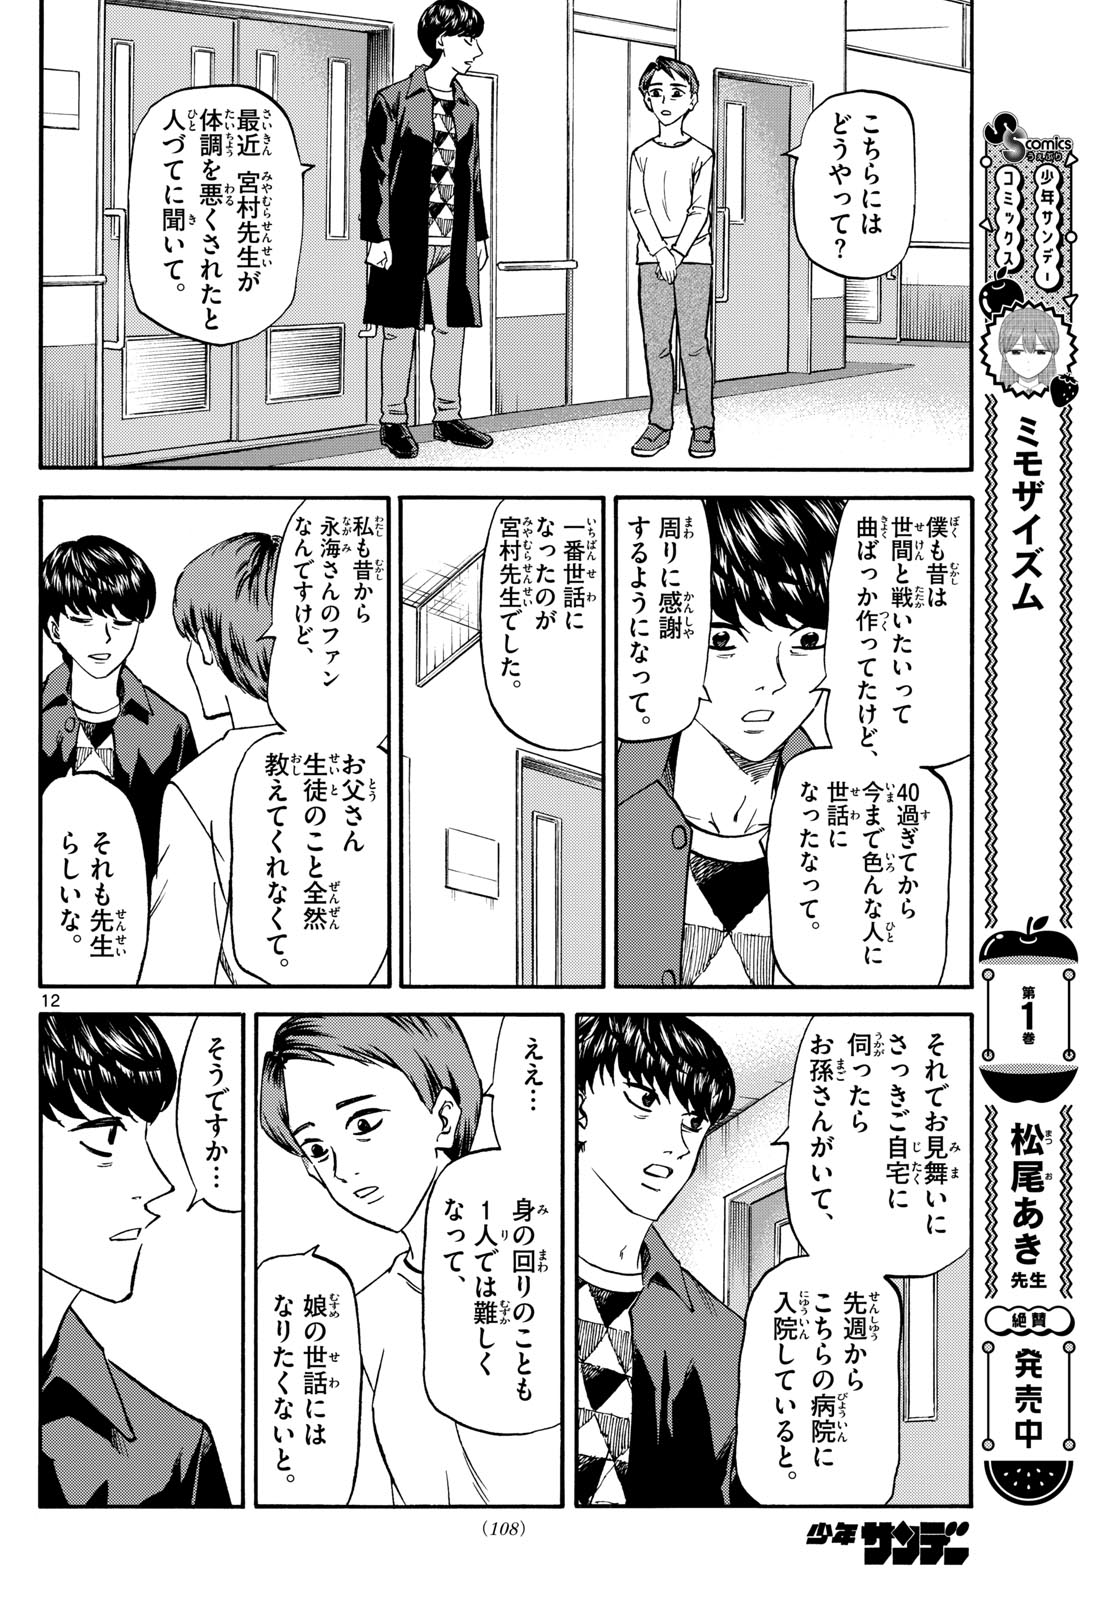 Tatsu to Ichigo - Chapter 174 - Page 12